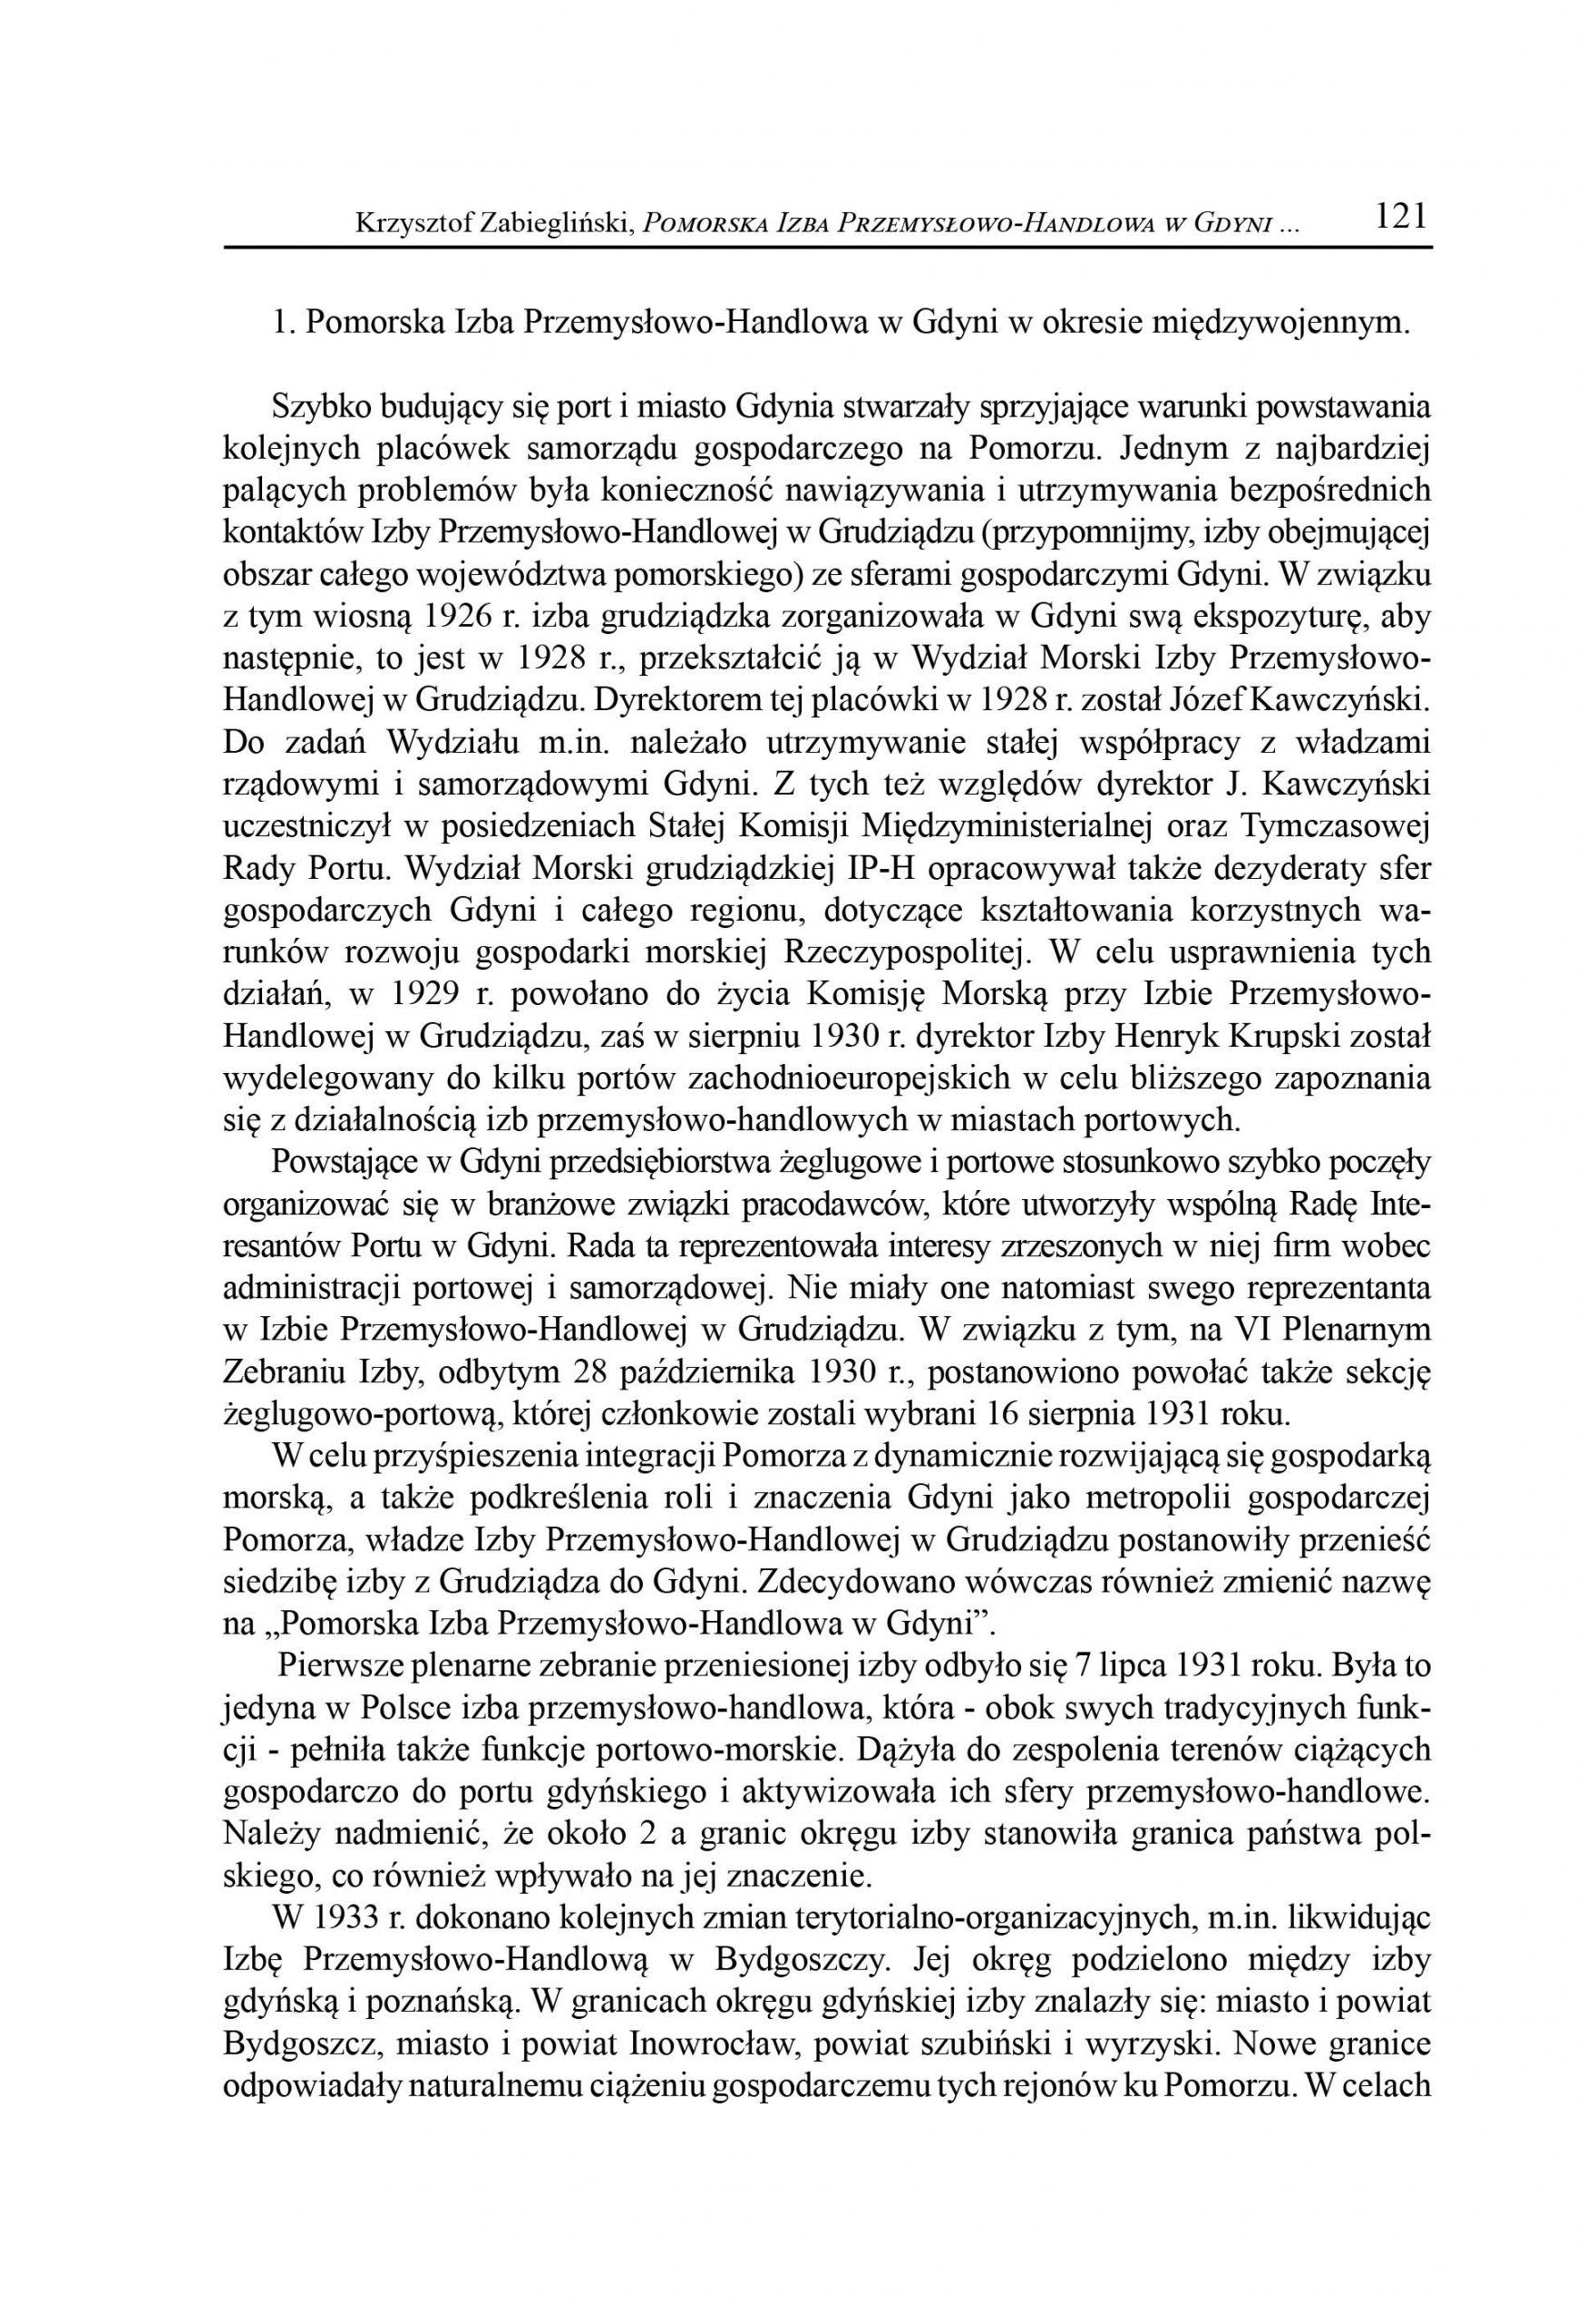 Pomorska Izba Przemysłowo-Handlowa w Gdyni w latach 1926-1939 [cz. 1]